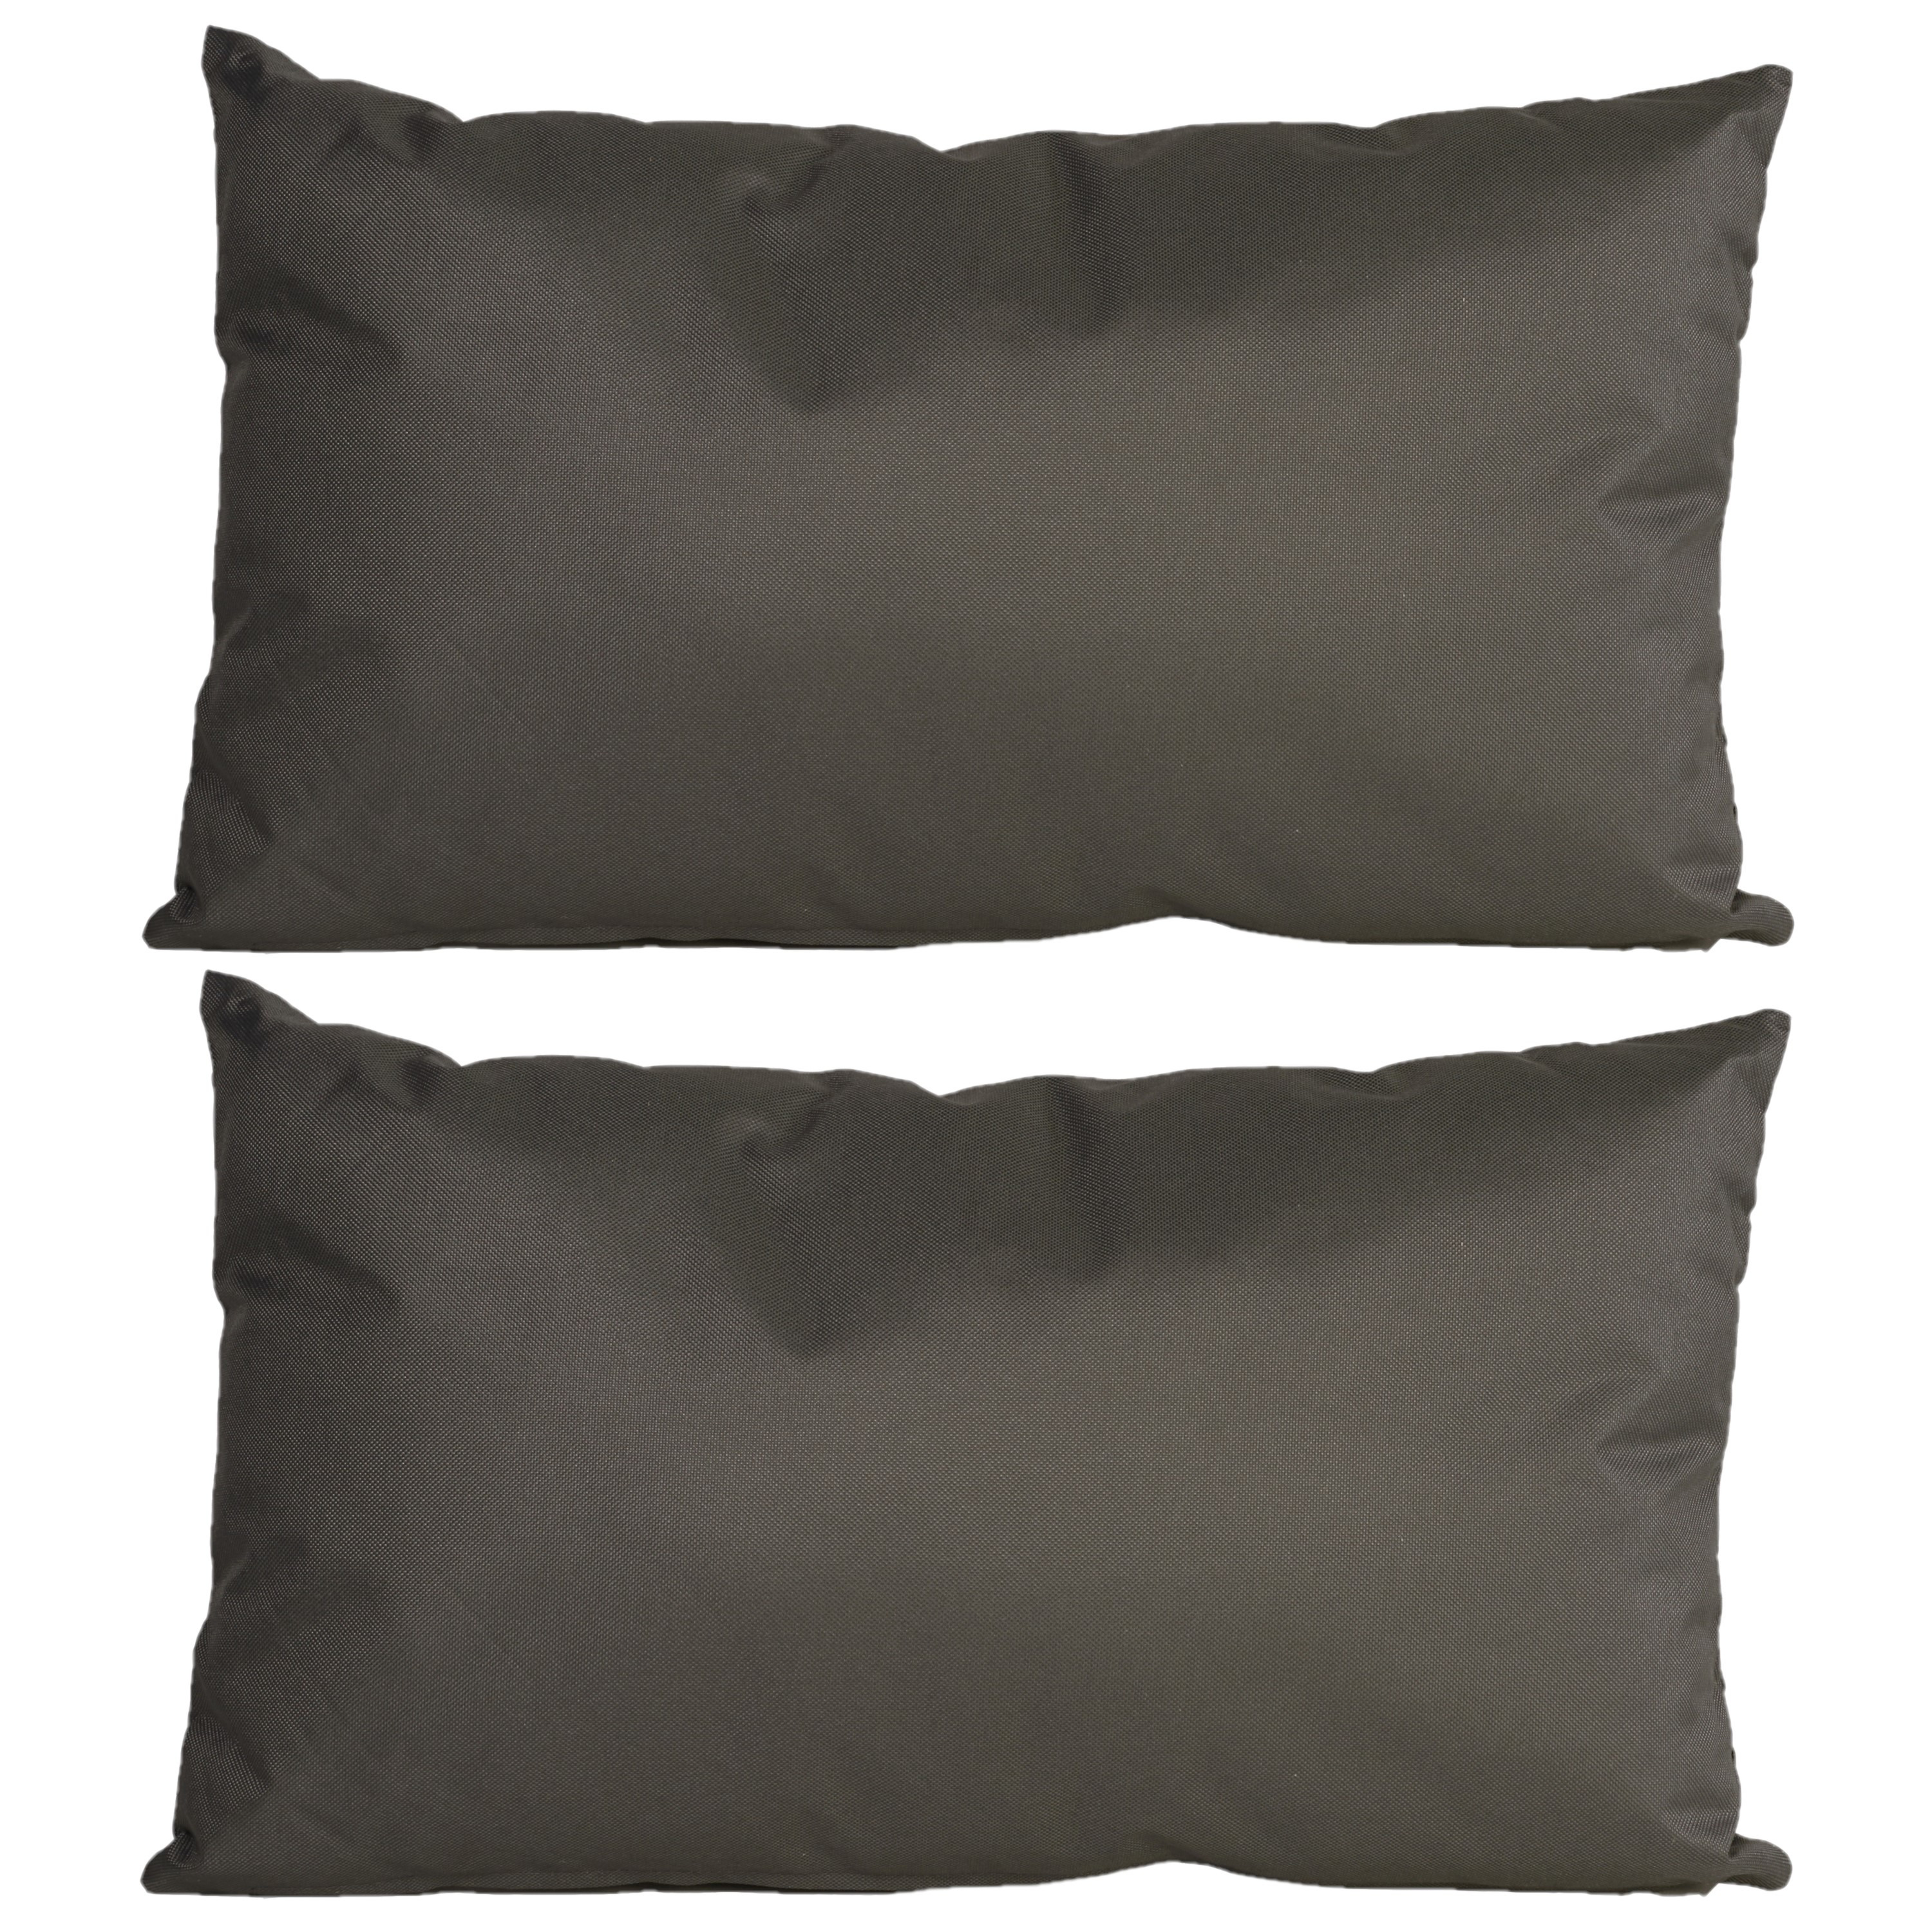 8x Bank-sier kussens voor binnen en buiten in de kleur antraciet grijs 30 x 50 cm